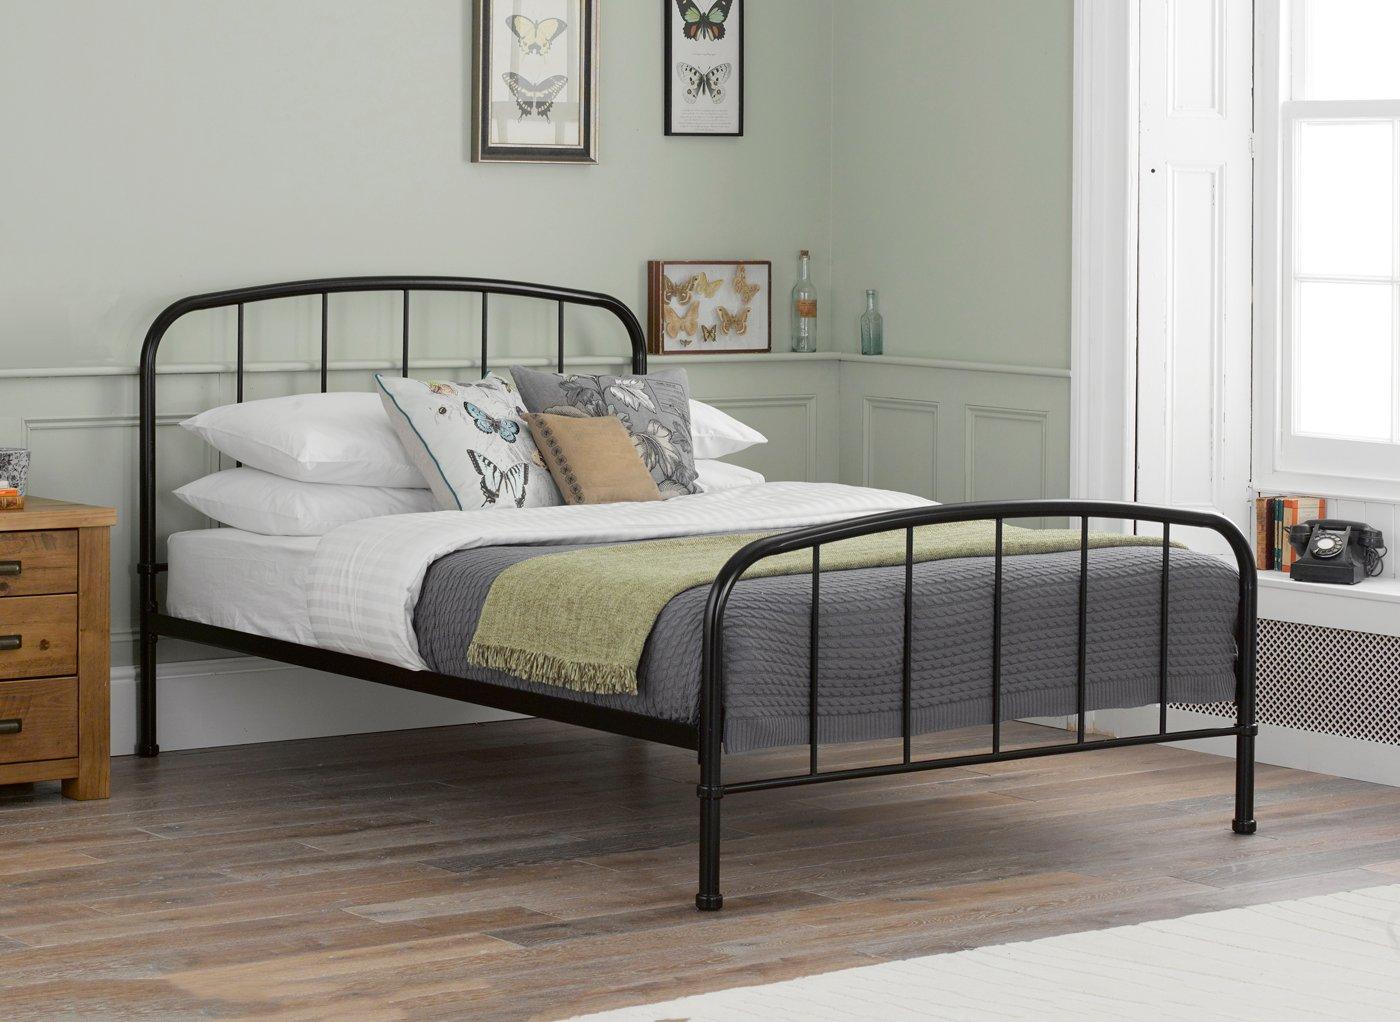 single metal bed frame bedroom furniture